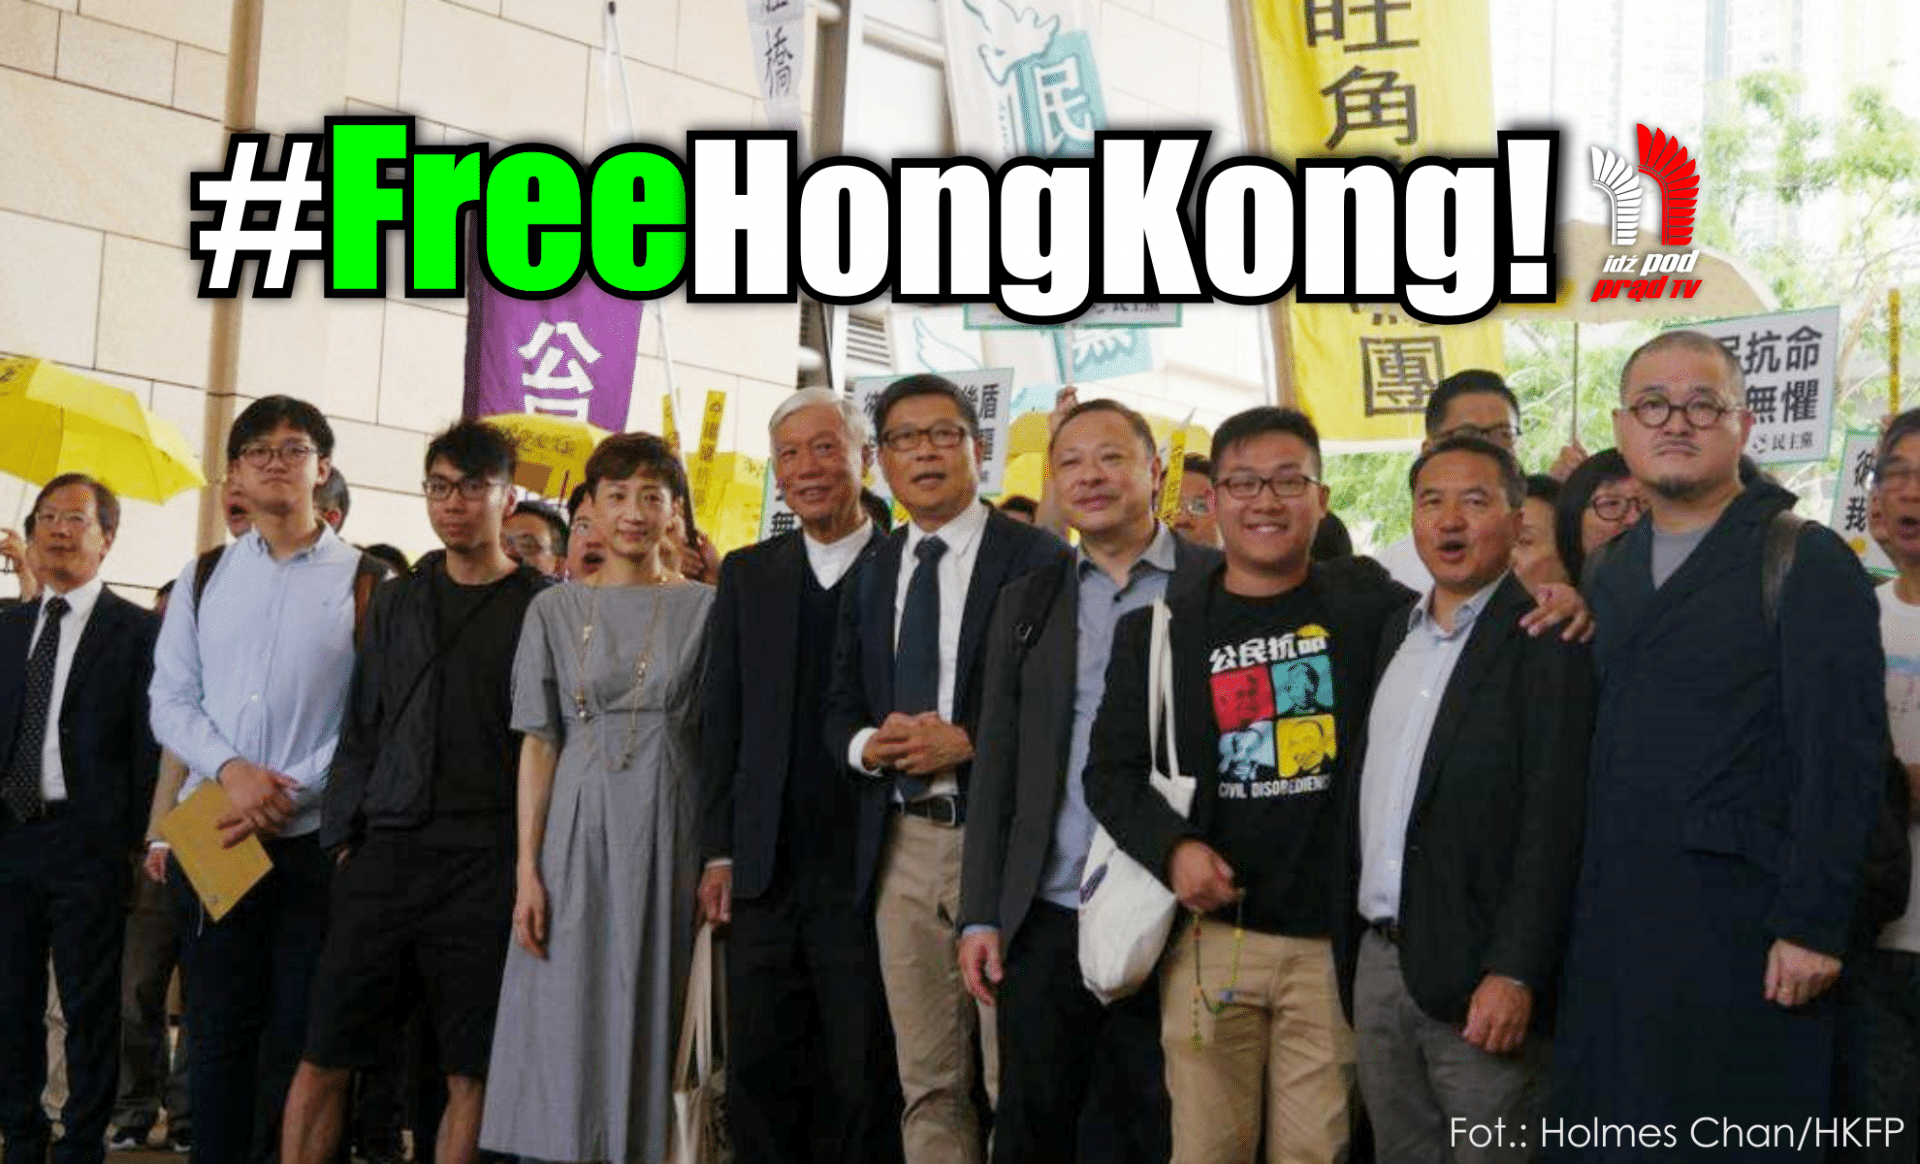 Skazani na więzienie przez chiński komunistyczny sąd! Pomóż, dołącz do akcji #FreeHongKong!